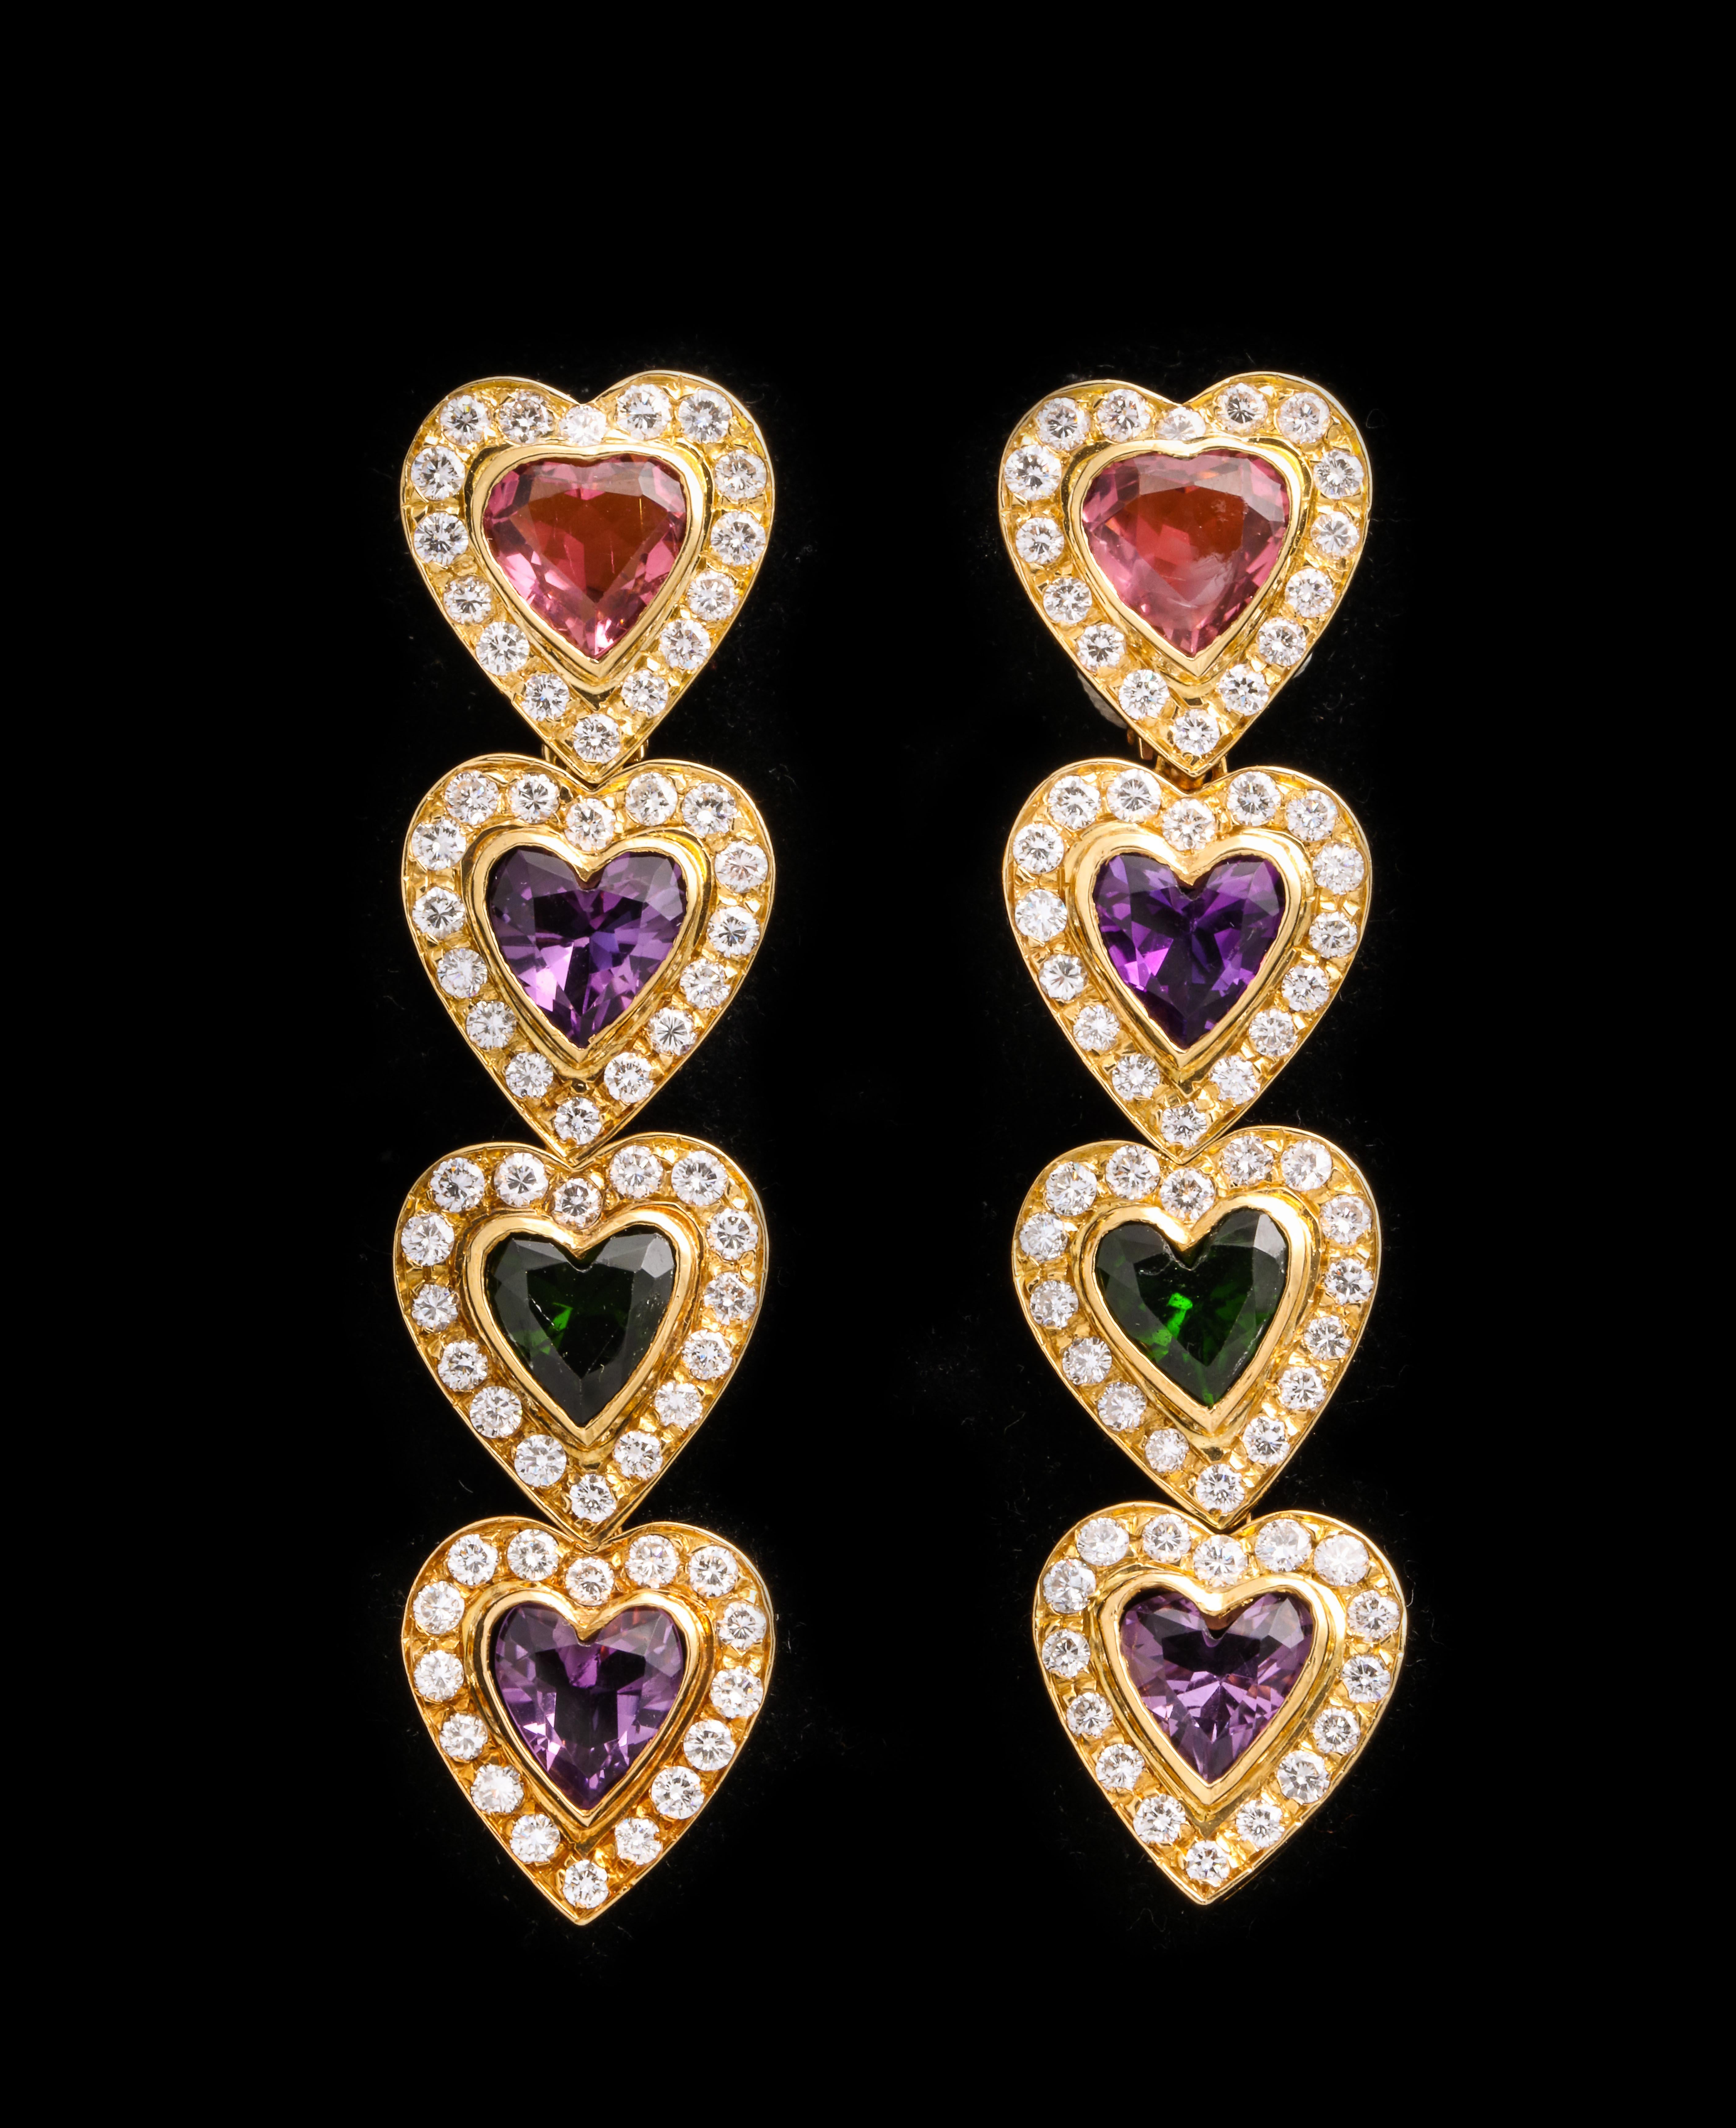 Boucles d'oreilles coeur saphir multicolore

Serti de tourmaline rose, d'améthyste et de grenat

Environ 5,65 ct de diamants
or jaune 18k